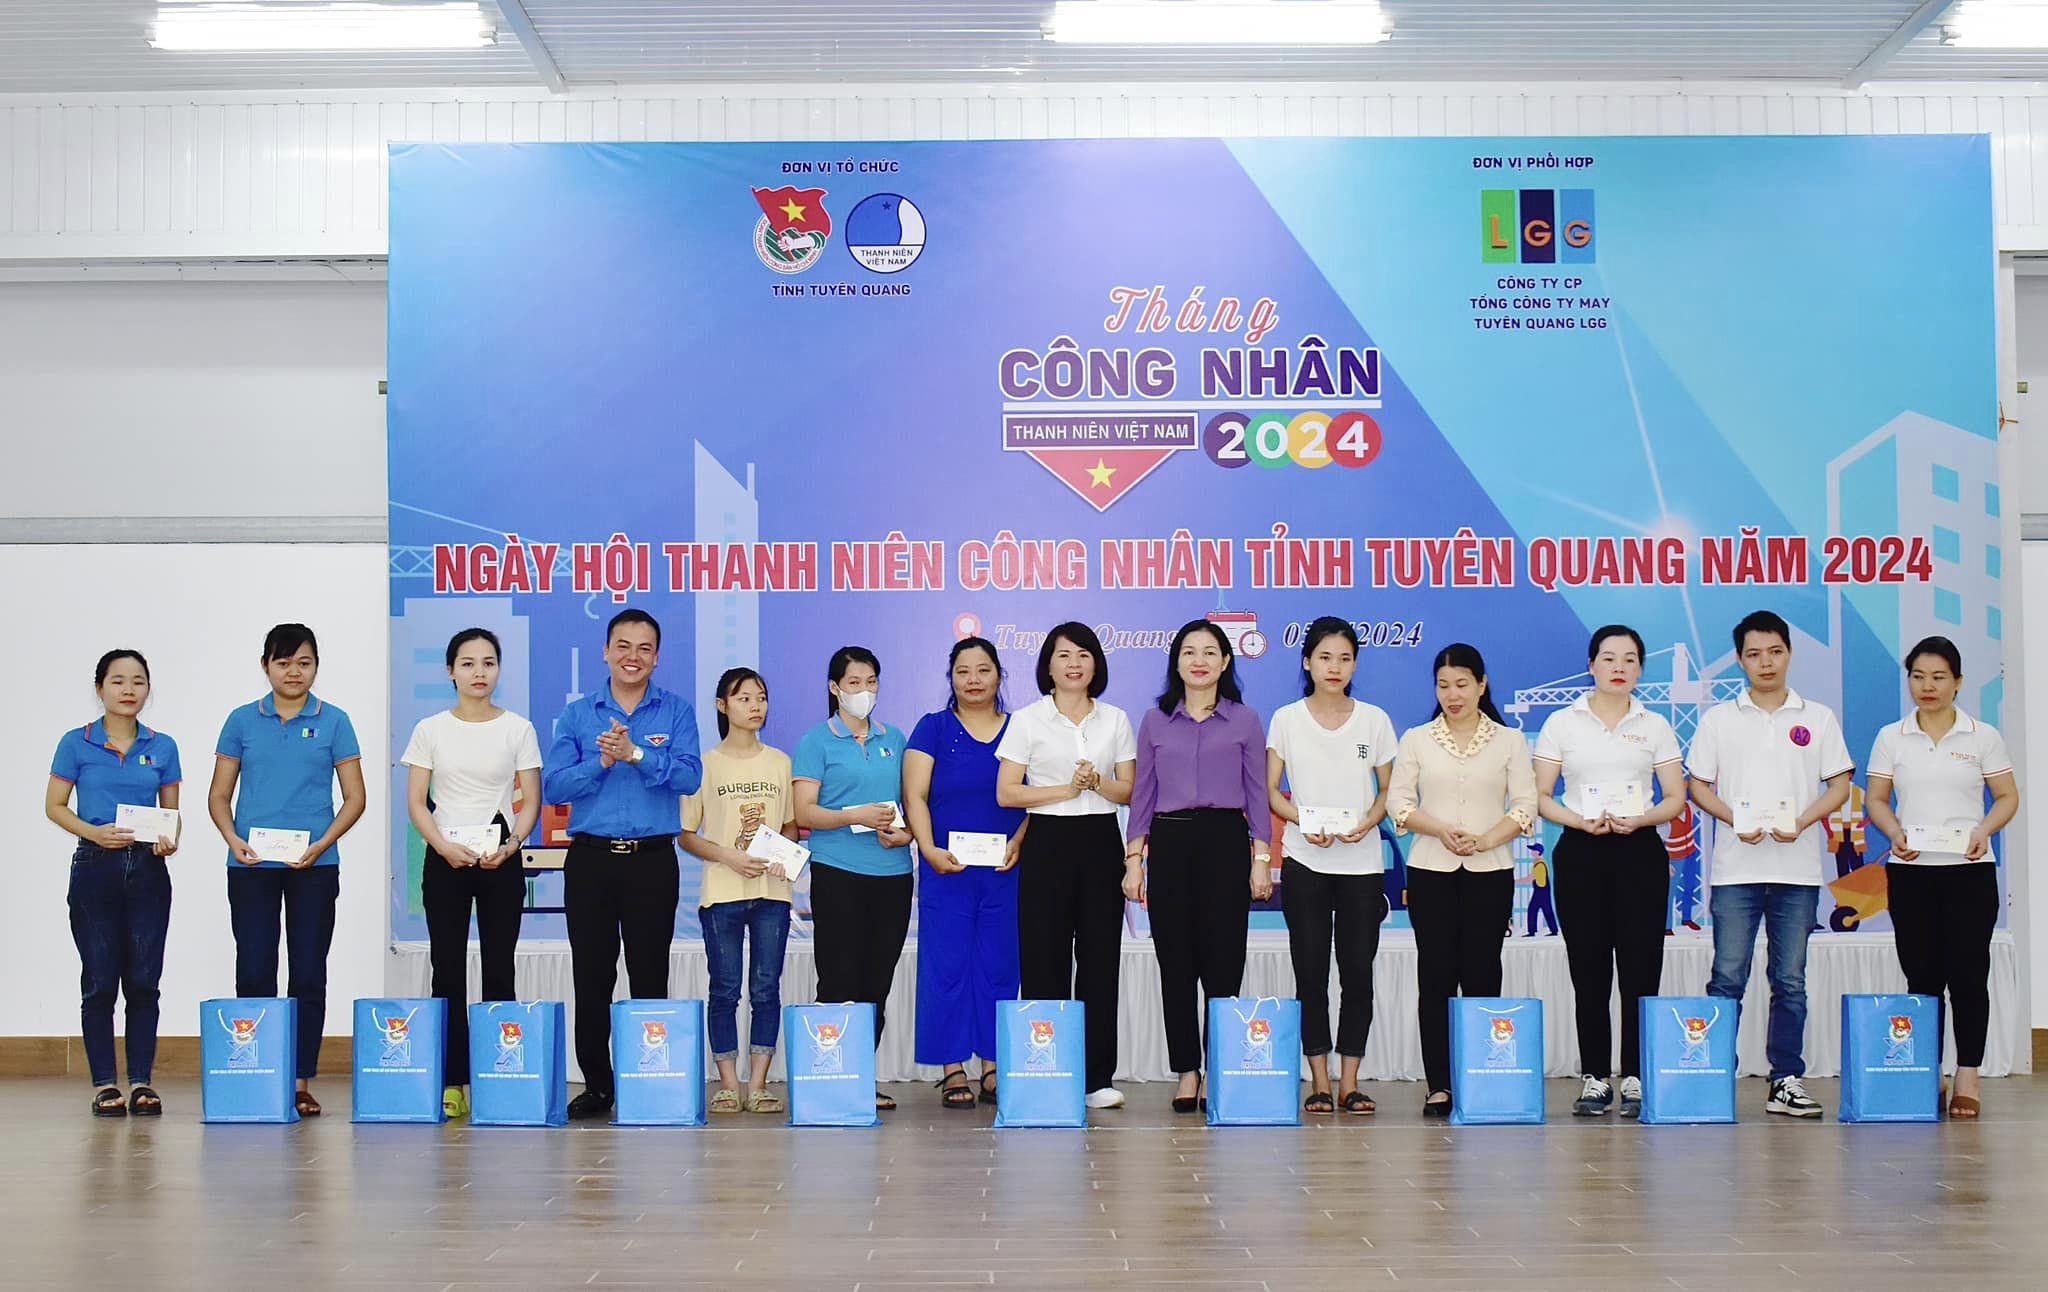 Ngày hội Thanh niên công nhân tỉnh Tuyên Quang năm 2024